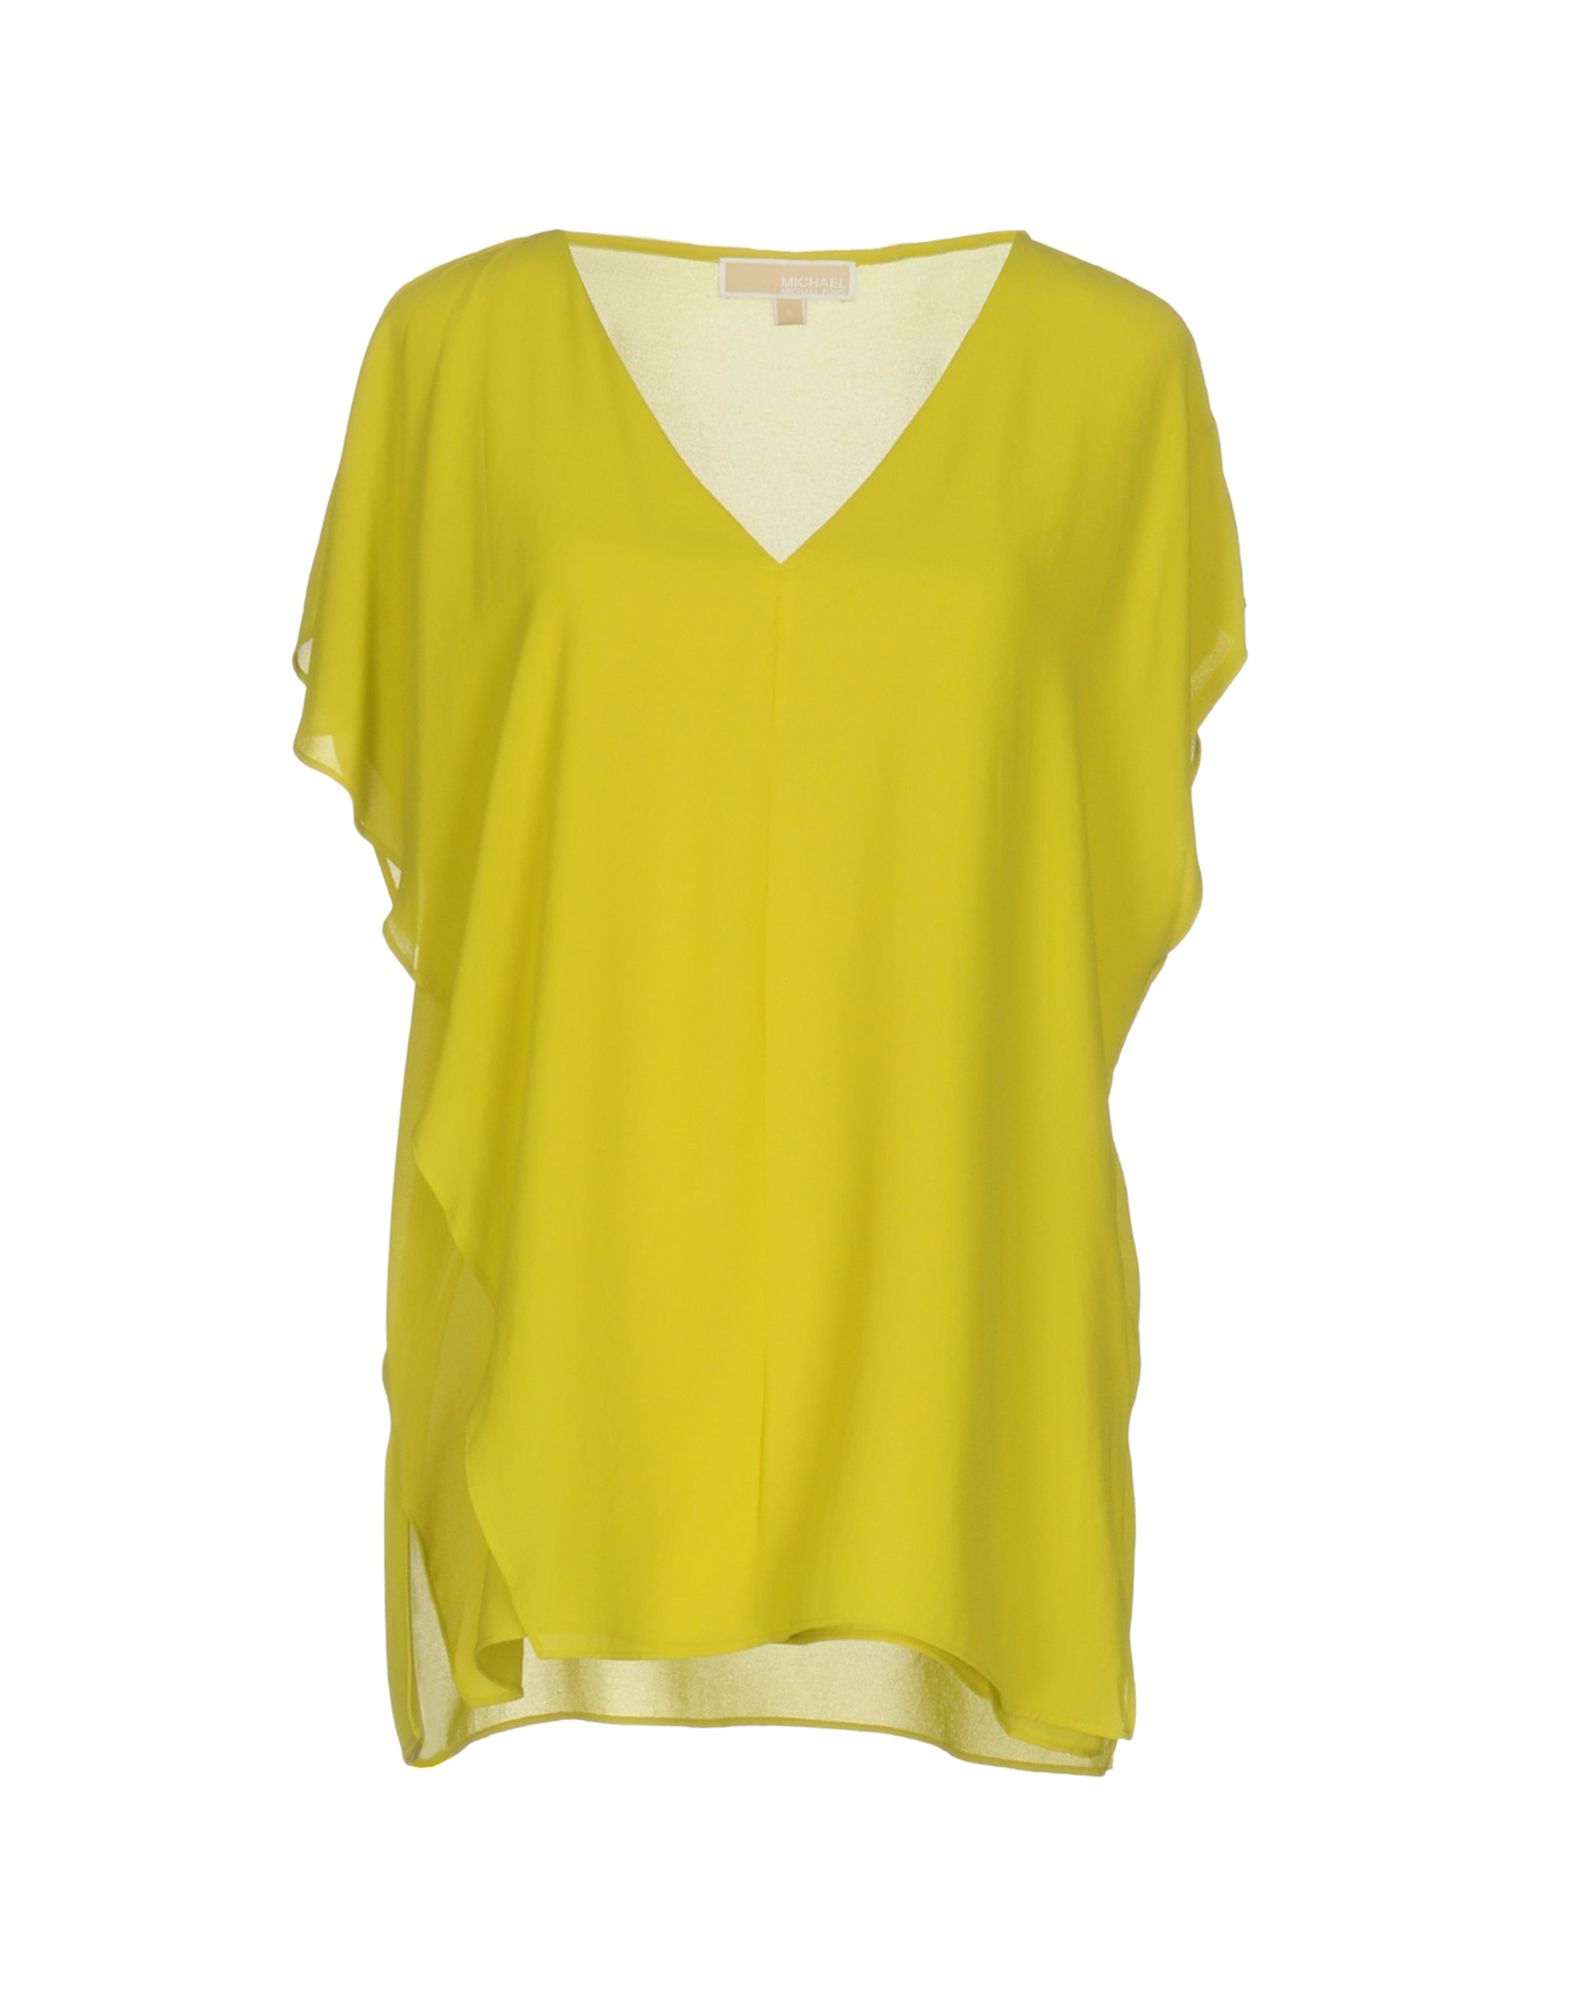 MICHAEL MICHAEL KORS Solid color shirts & blouses,38655457PW 6